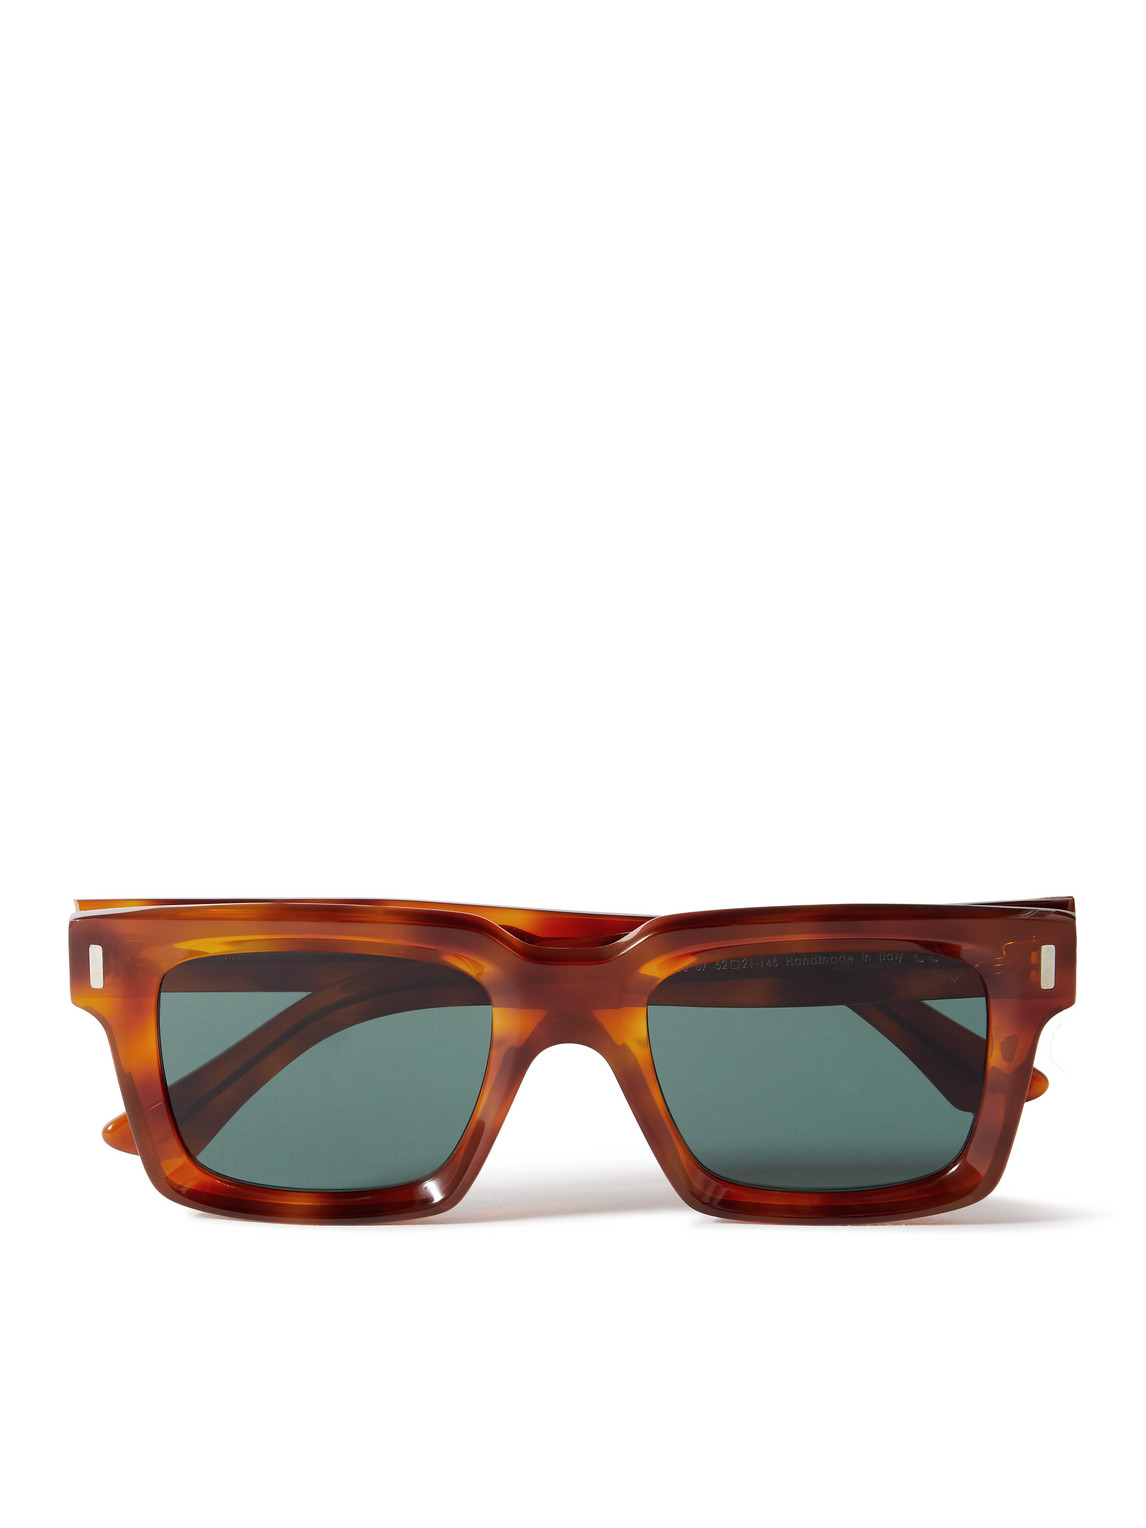 Cutler And Gross D-frame Acetate Sunglasses In Tortoiseshell